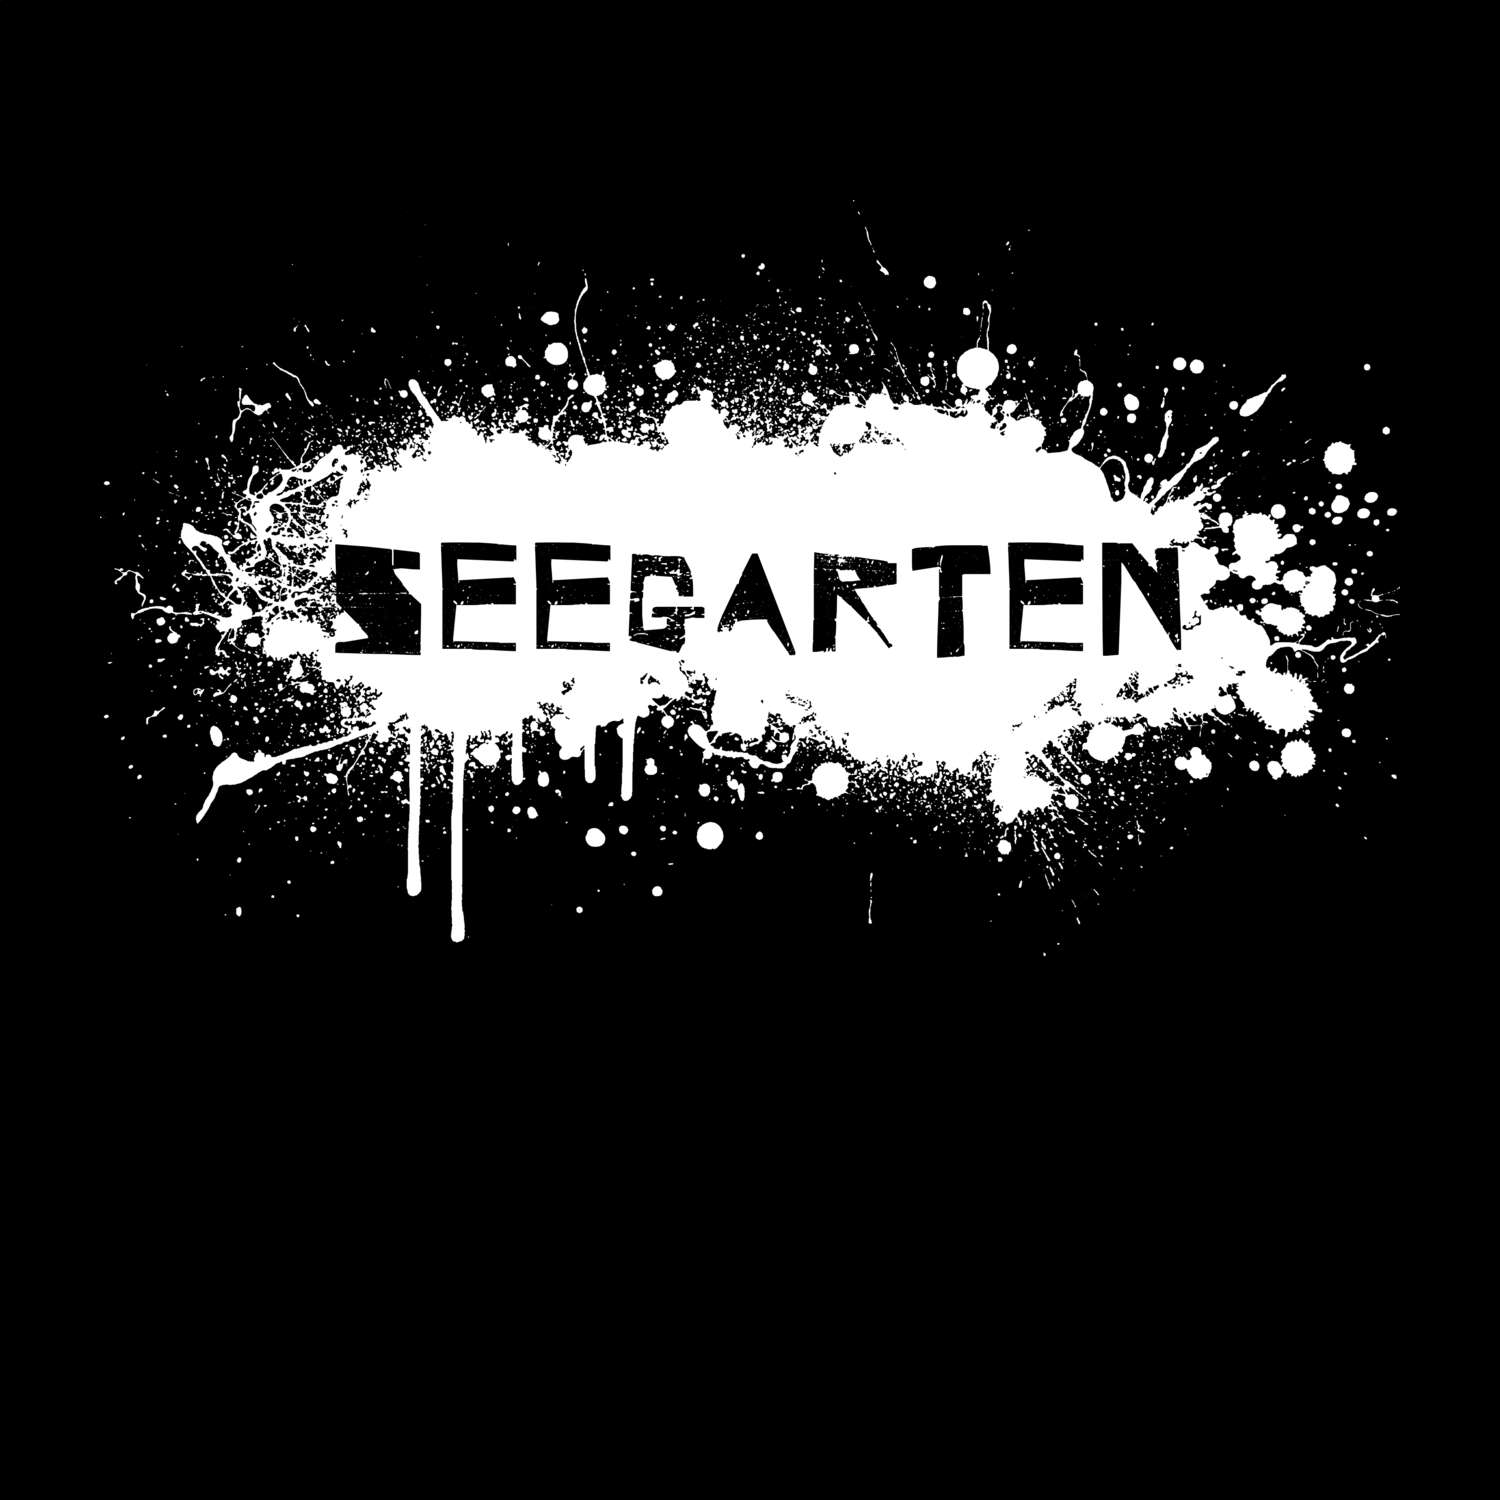 Seegarten T-Shirt »Paint Splash Punk«